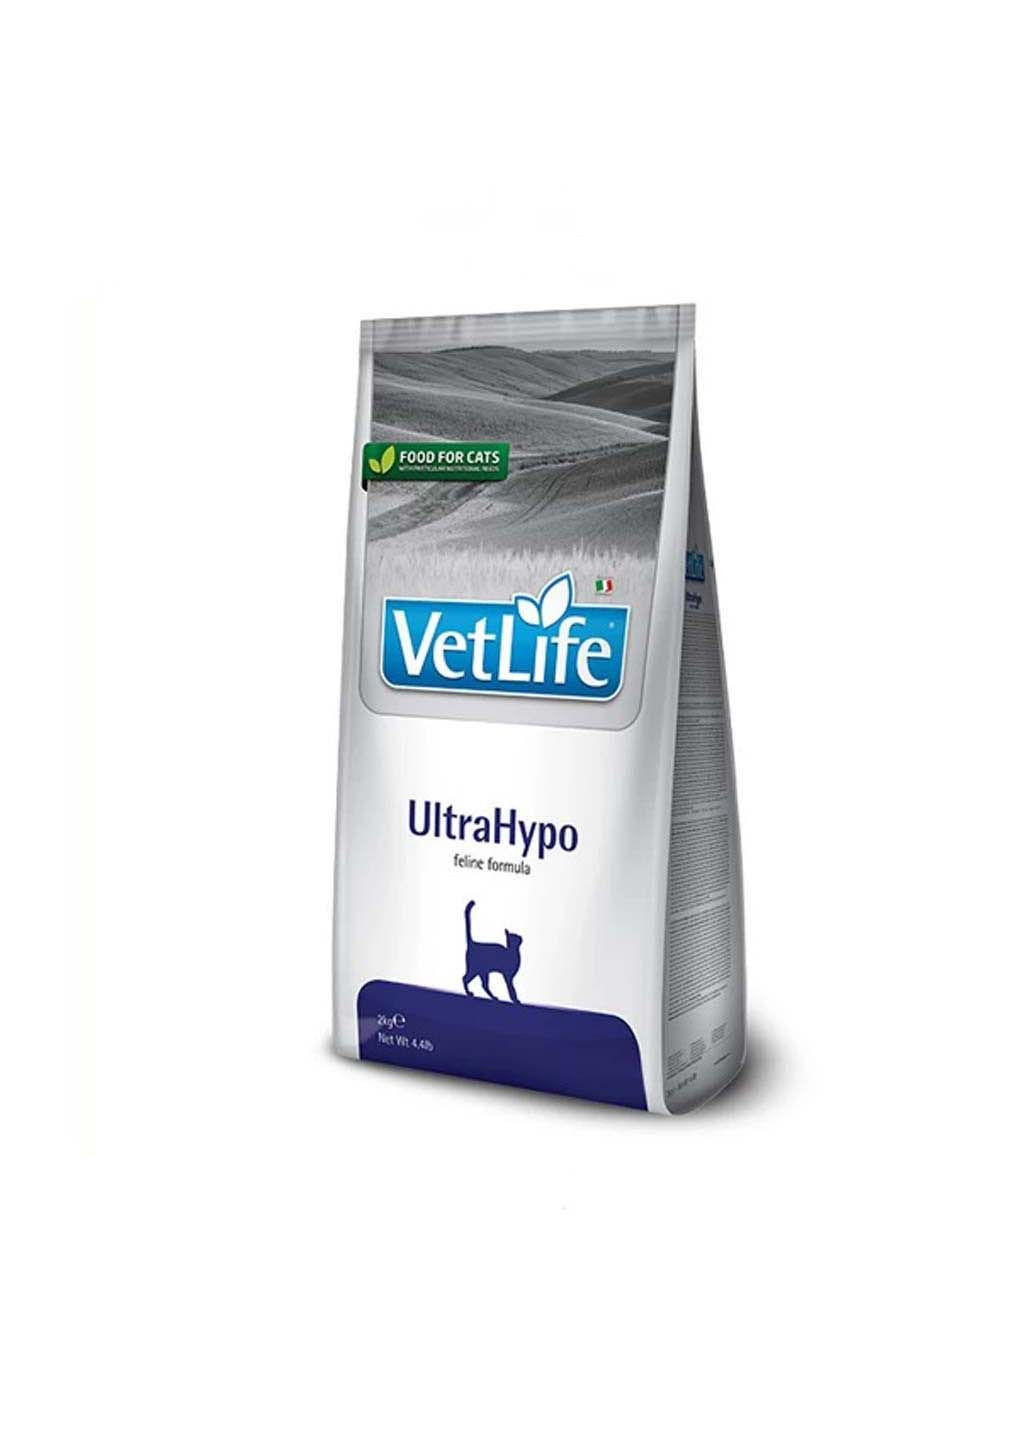 Сухой лечебный корм для кошек Vet Life UltraHypo диет. питание, при пищевой аллергии, 2 кг Farmina (286473011)